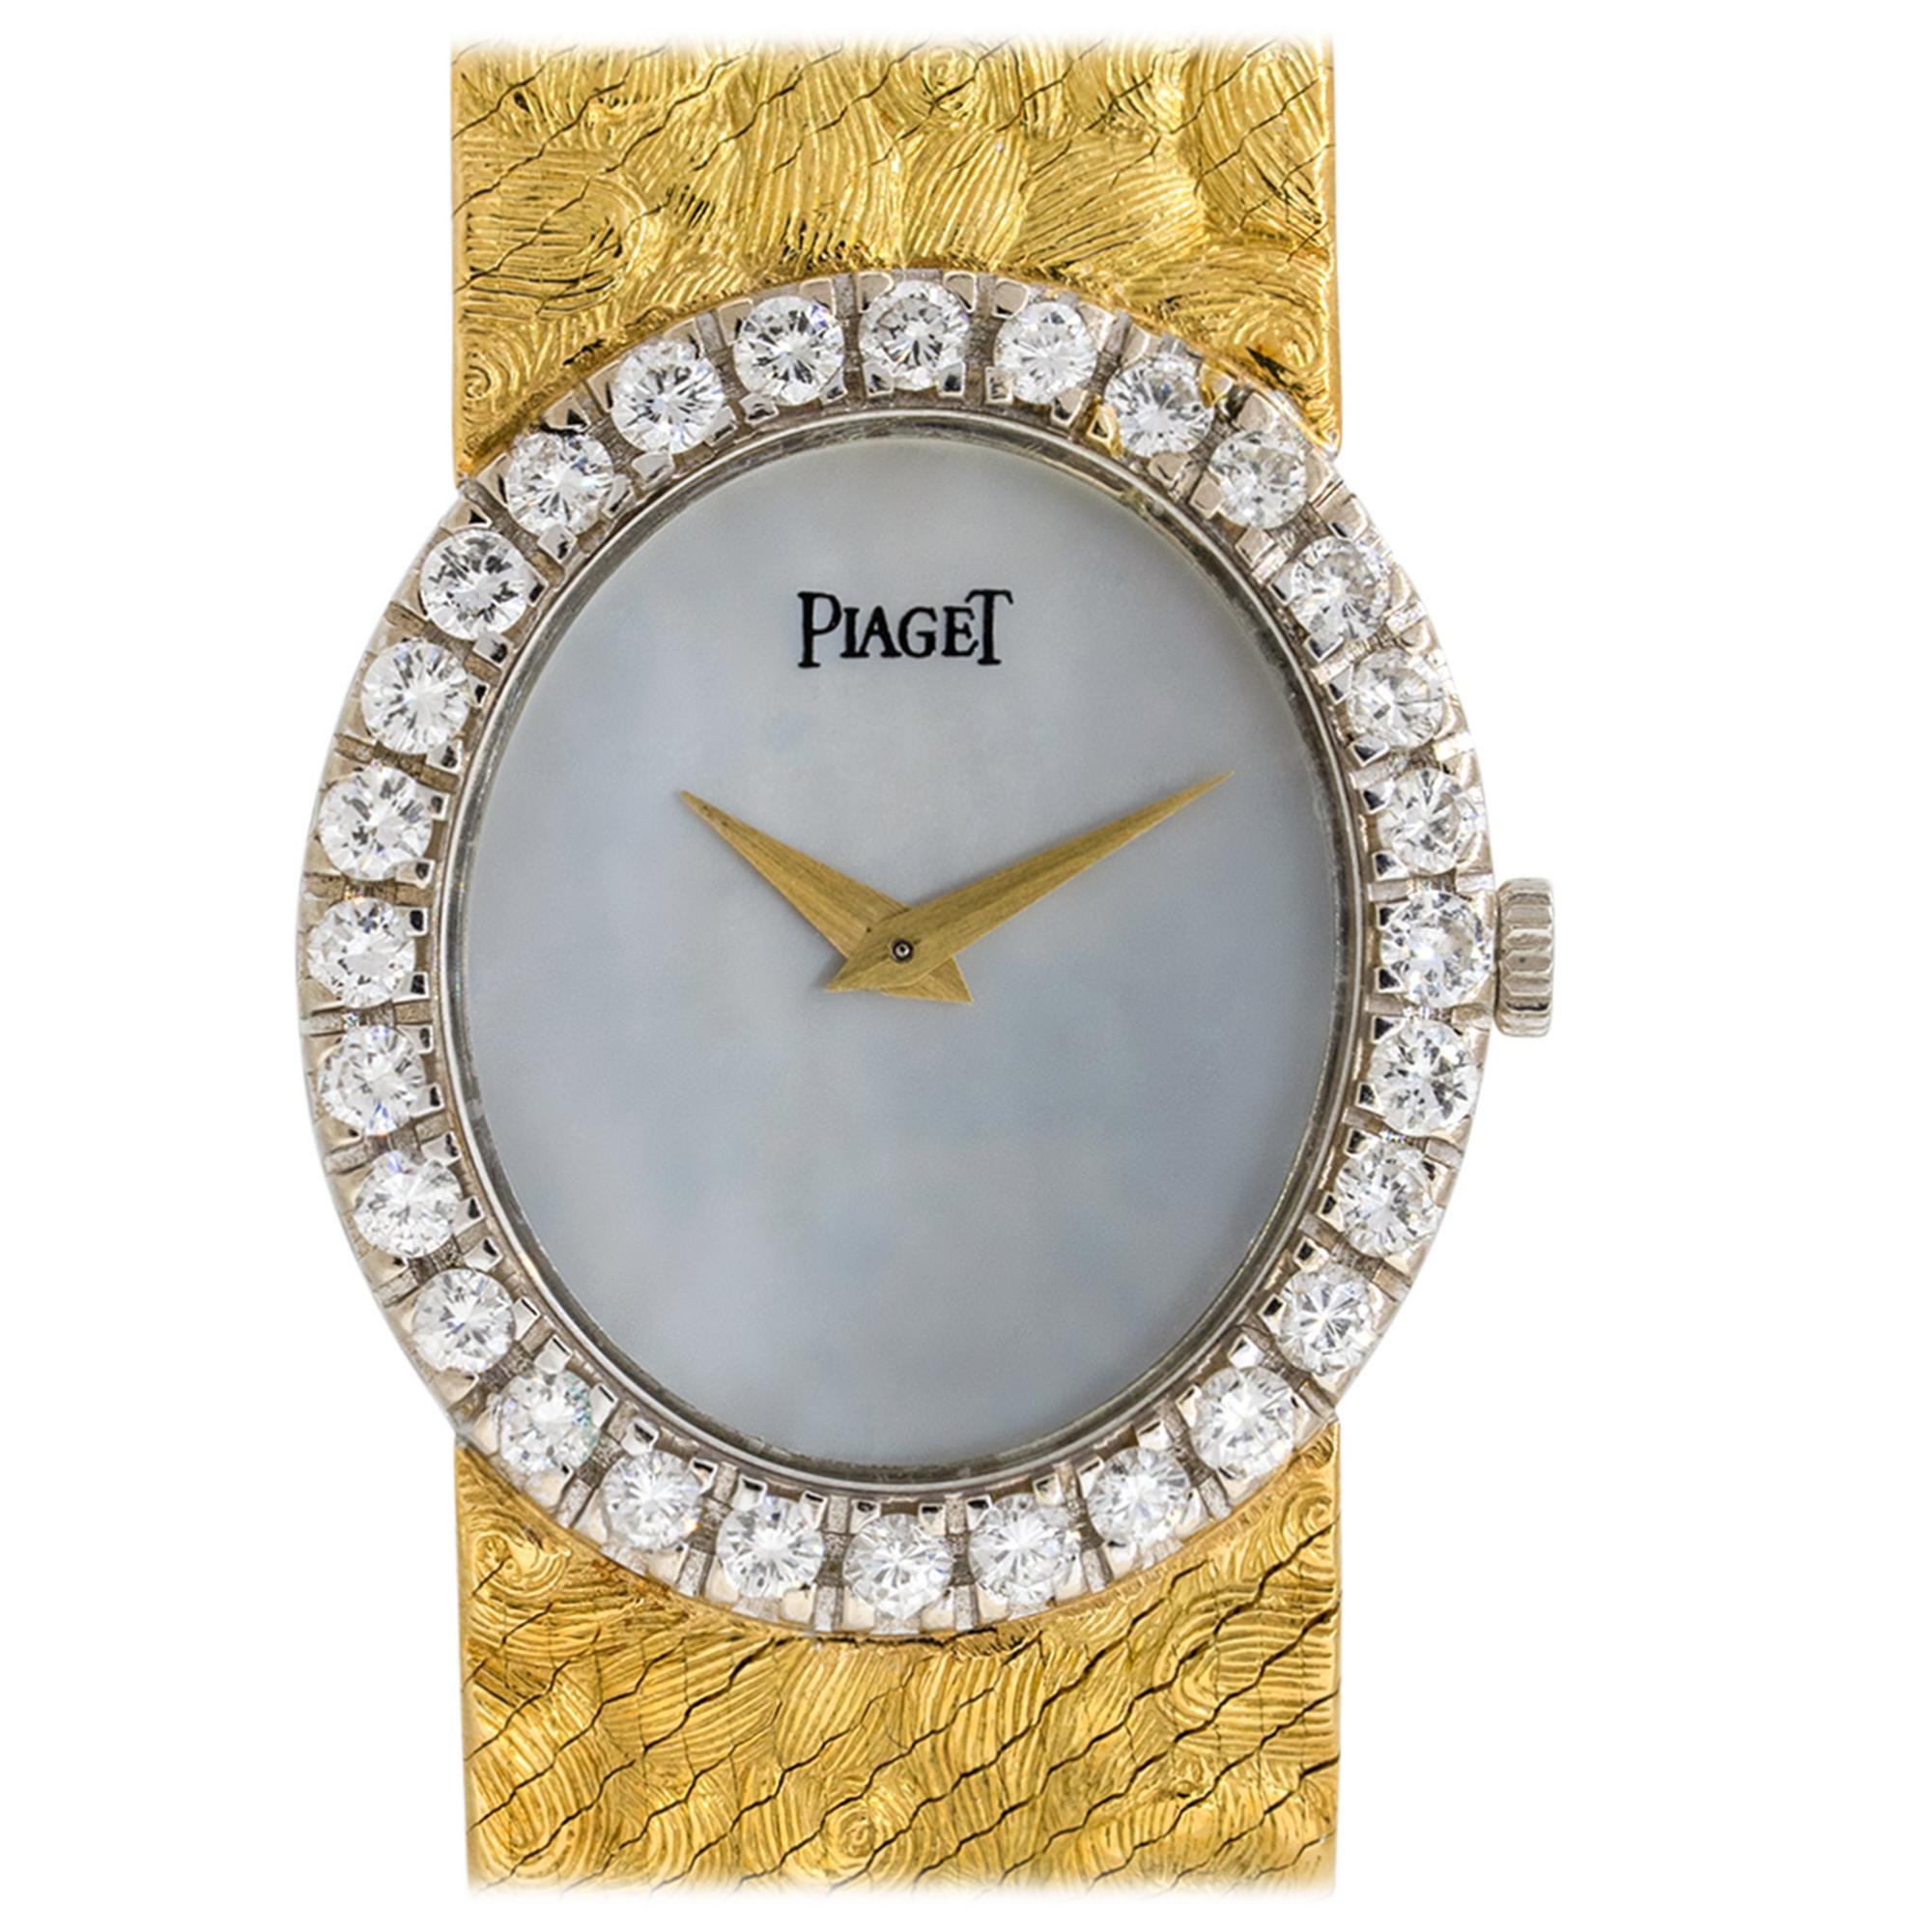 Piaget 9814 Perlmutt-Zifferblatt-Diamant-Uhr 18 Karat auf Lager